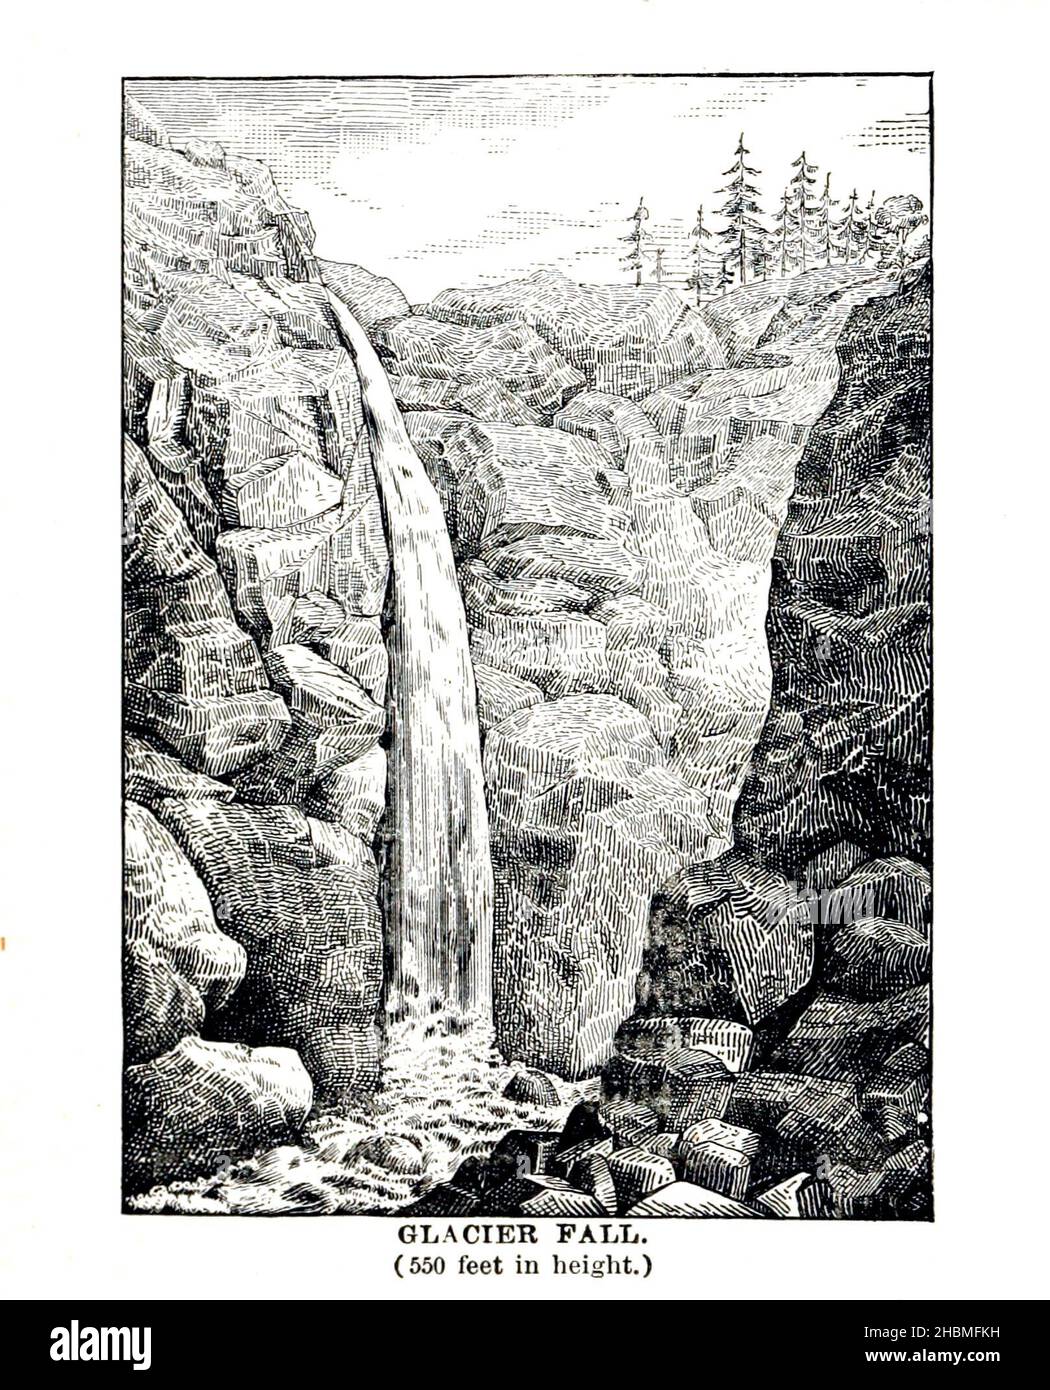 Glacier Fall (550 Fuß in der Höhe) 1880 aus dem Buch "Entdeckung des Yosemite, und der indische Krieg von 1851, die zu diesem Ereignis geführt ' von Lafayette Houghton Bunnell, 1824-1903 Veröffentlicht New York, Chicago, F.H. Revell Company 1892. Lafayette Houghton Bunnell (1824-1903) war Mitglied des Mariposa Bataillons, das 1851 zu den weißen Entdeckern des Yosemite Valley wurde, als sie auf der Suche nach indianischen Stammesführern, die an den jüngsten Razzien auf amerikanische Siedlungen beteiligt waren, ausritten. Dr. Bunnell diente später als Chirurg im Bürgerkrieg. Entdeckung des Yosemite und des Indianerkrieges von 1851 (o Stockfoto